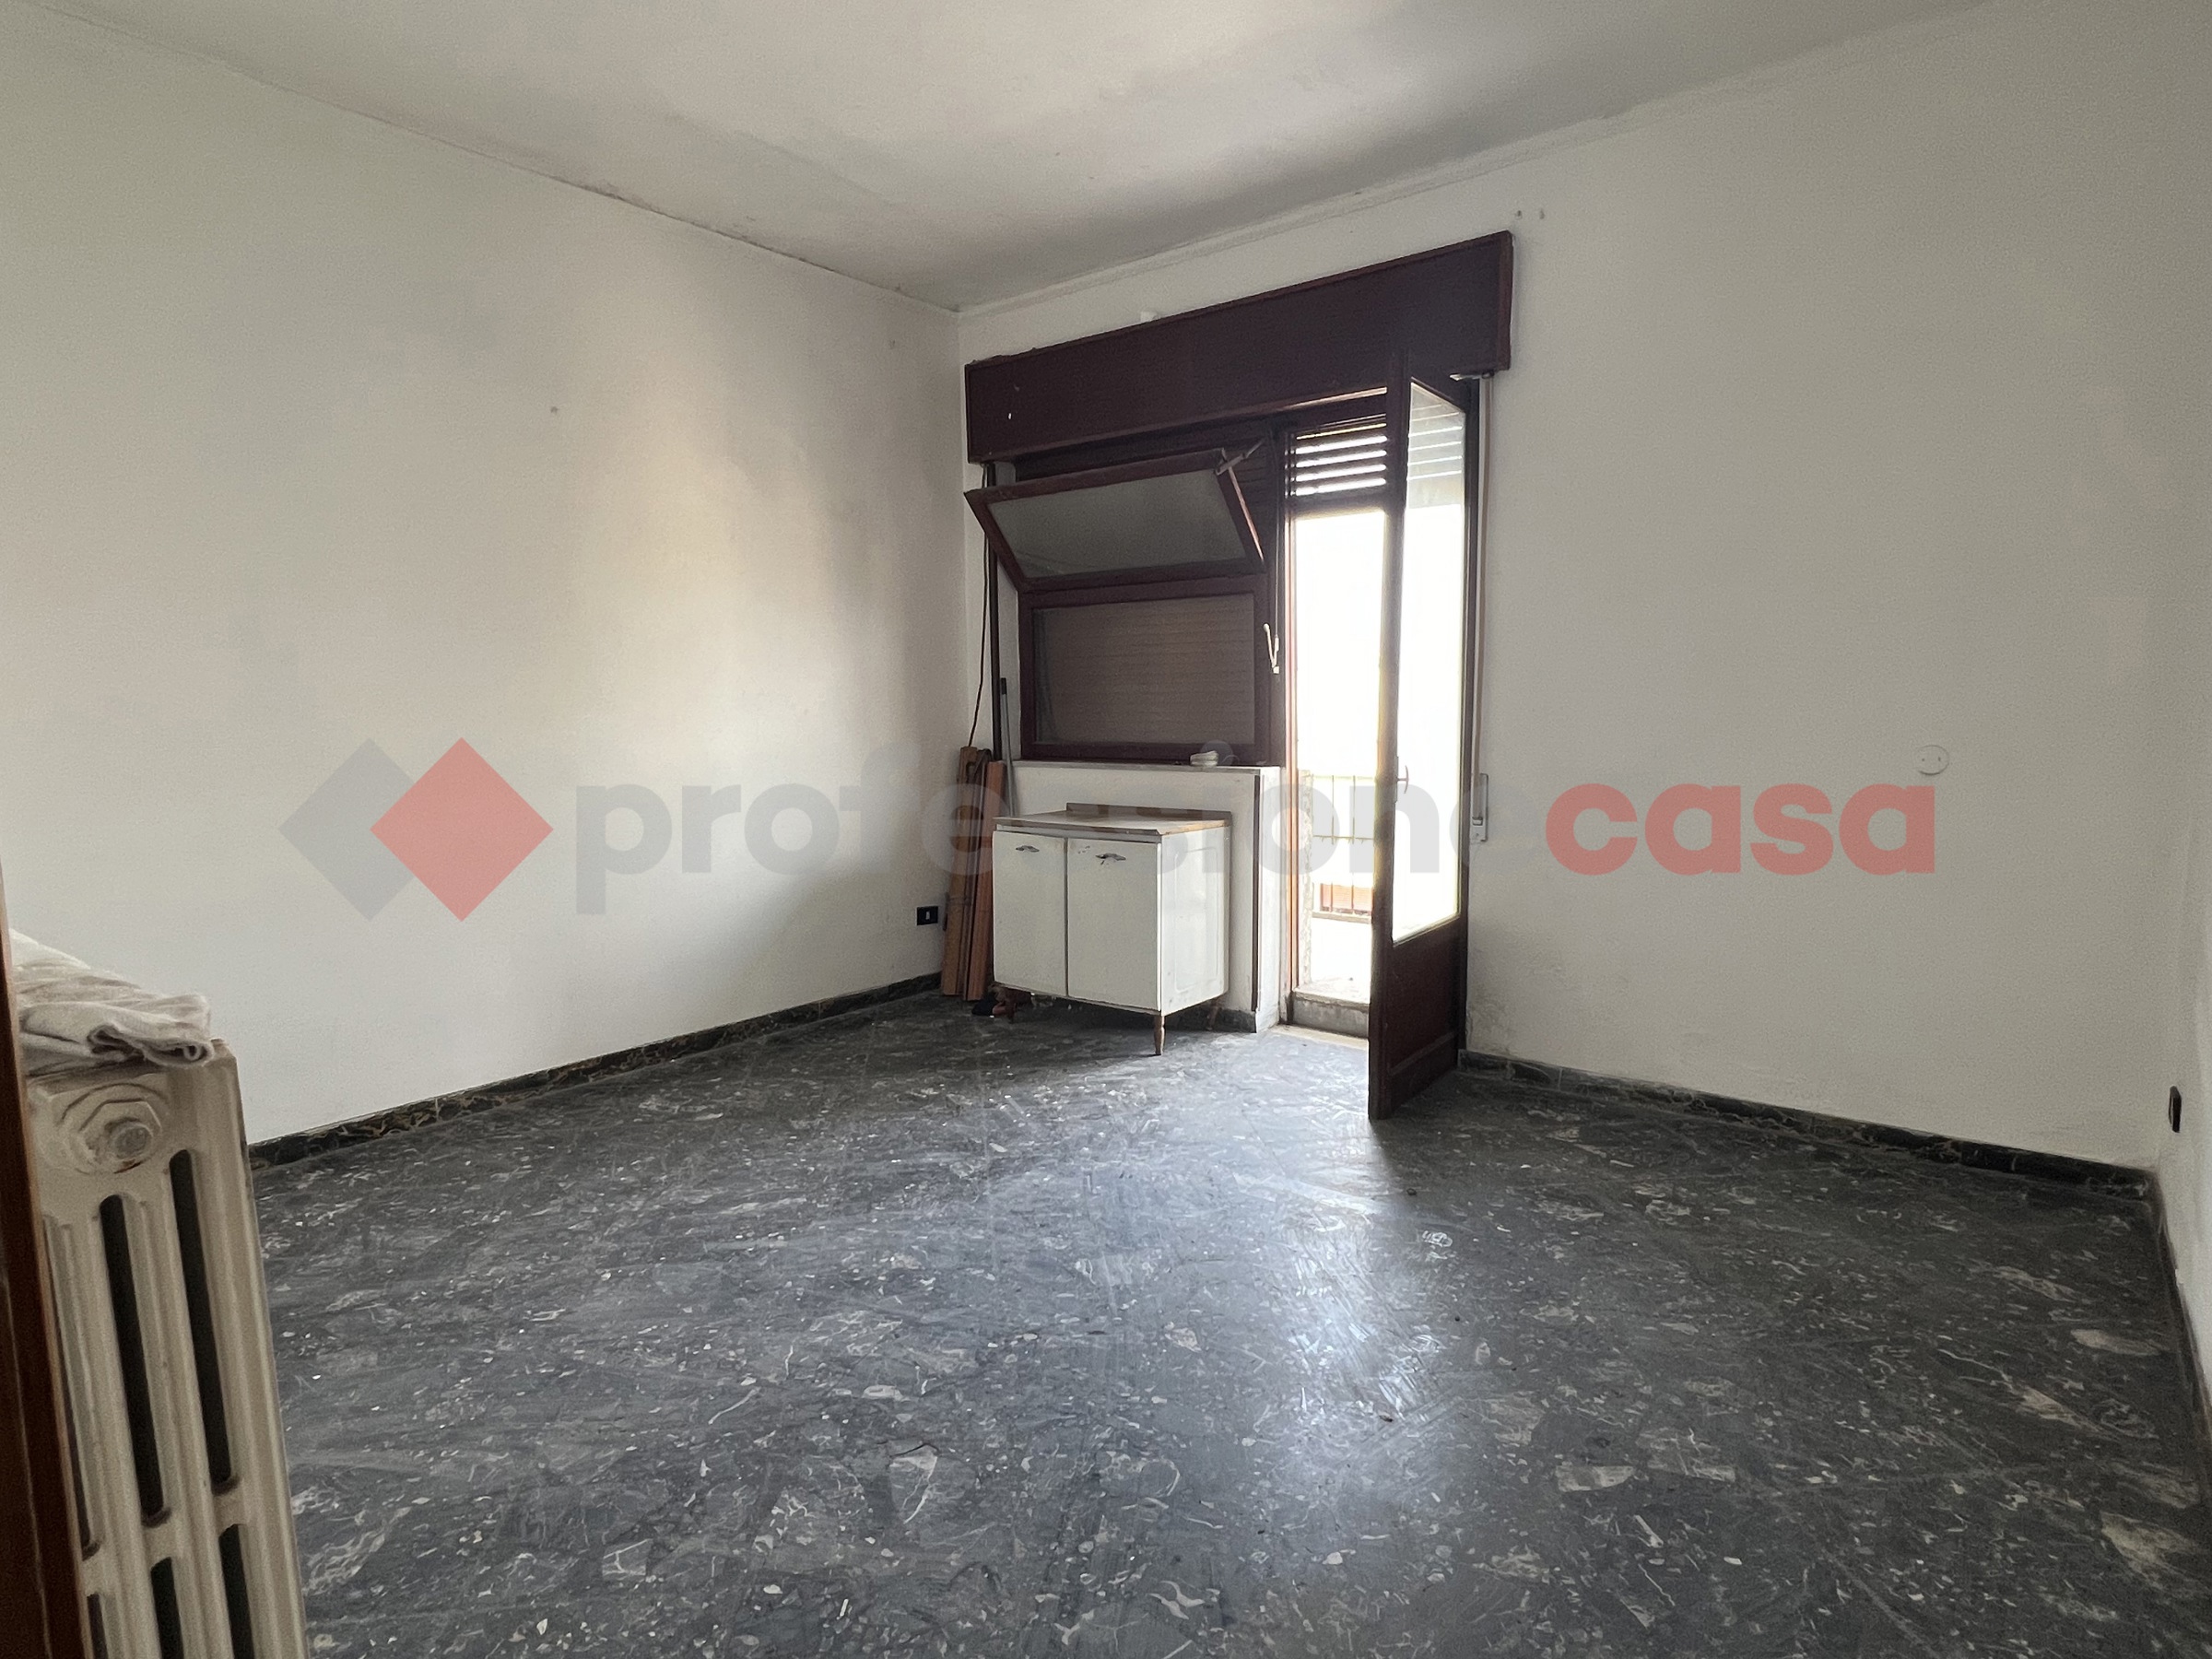 Appartamento di 110 mq in vendita - Taranto